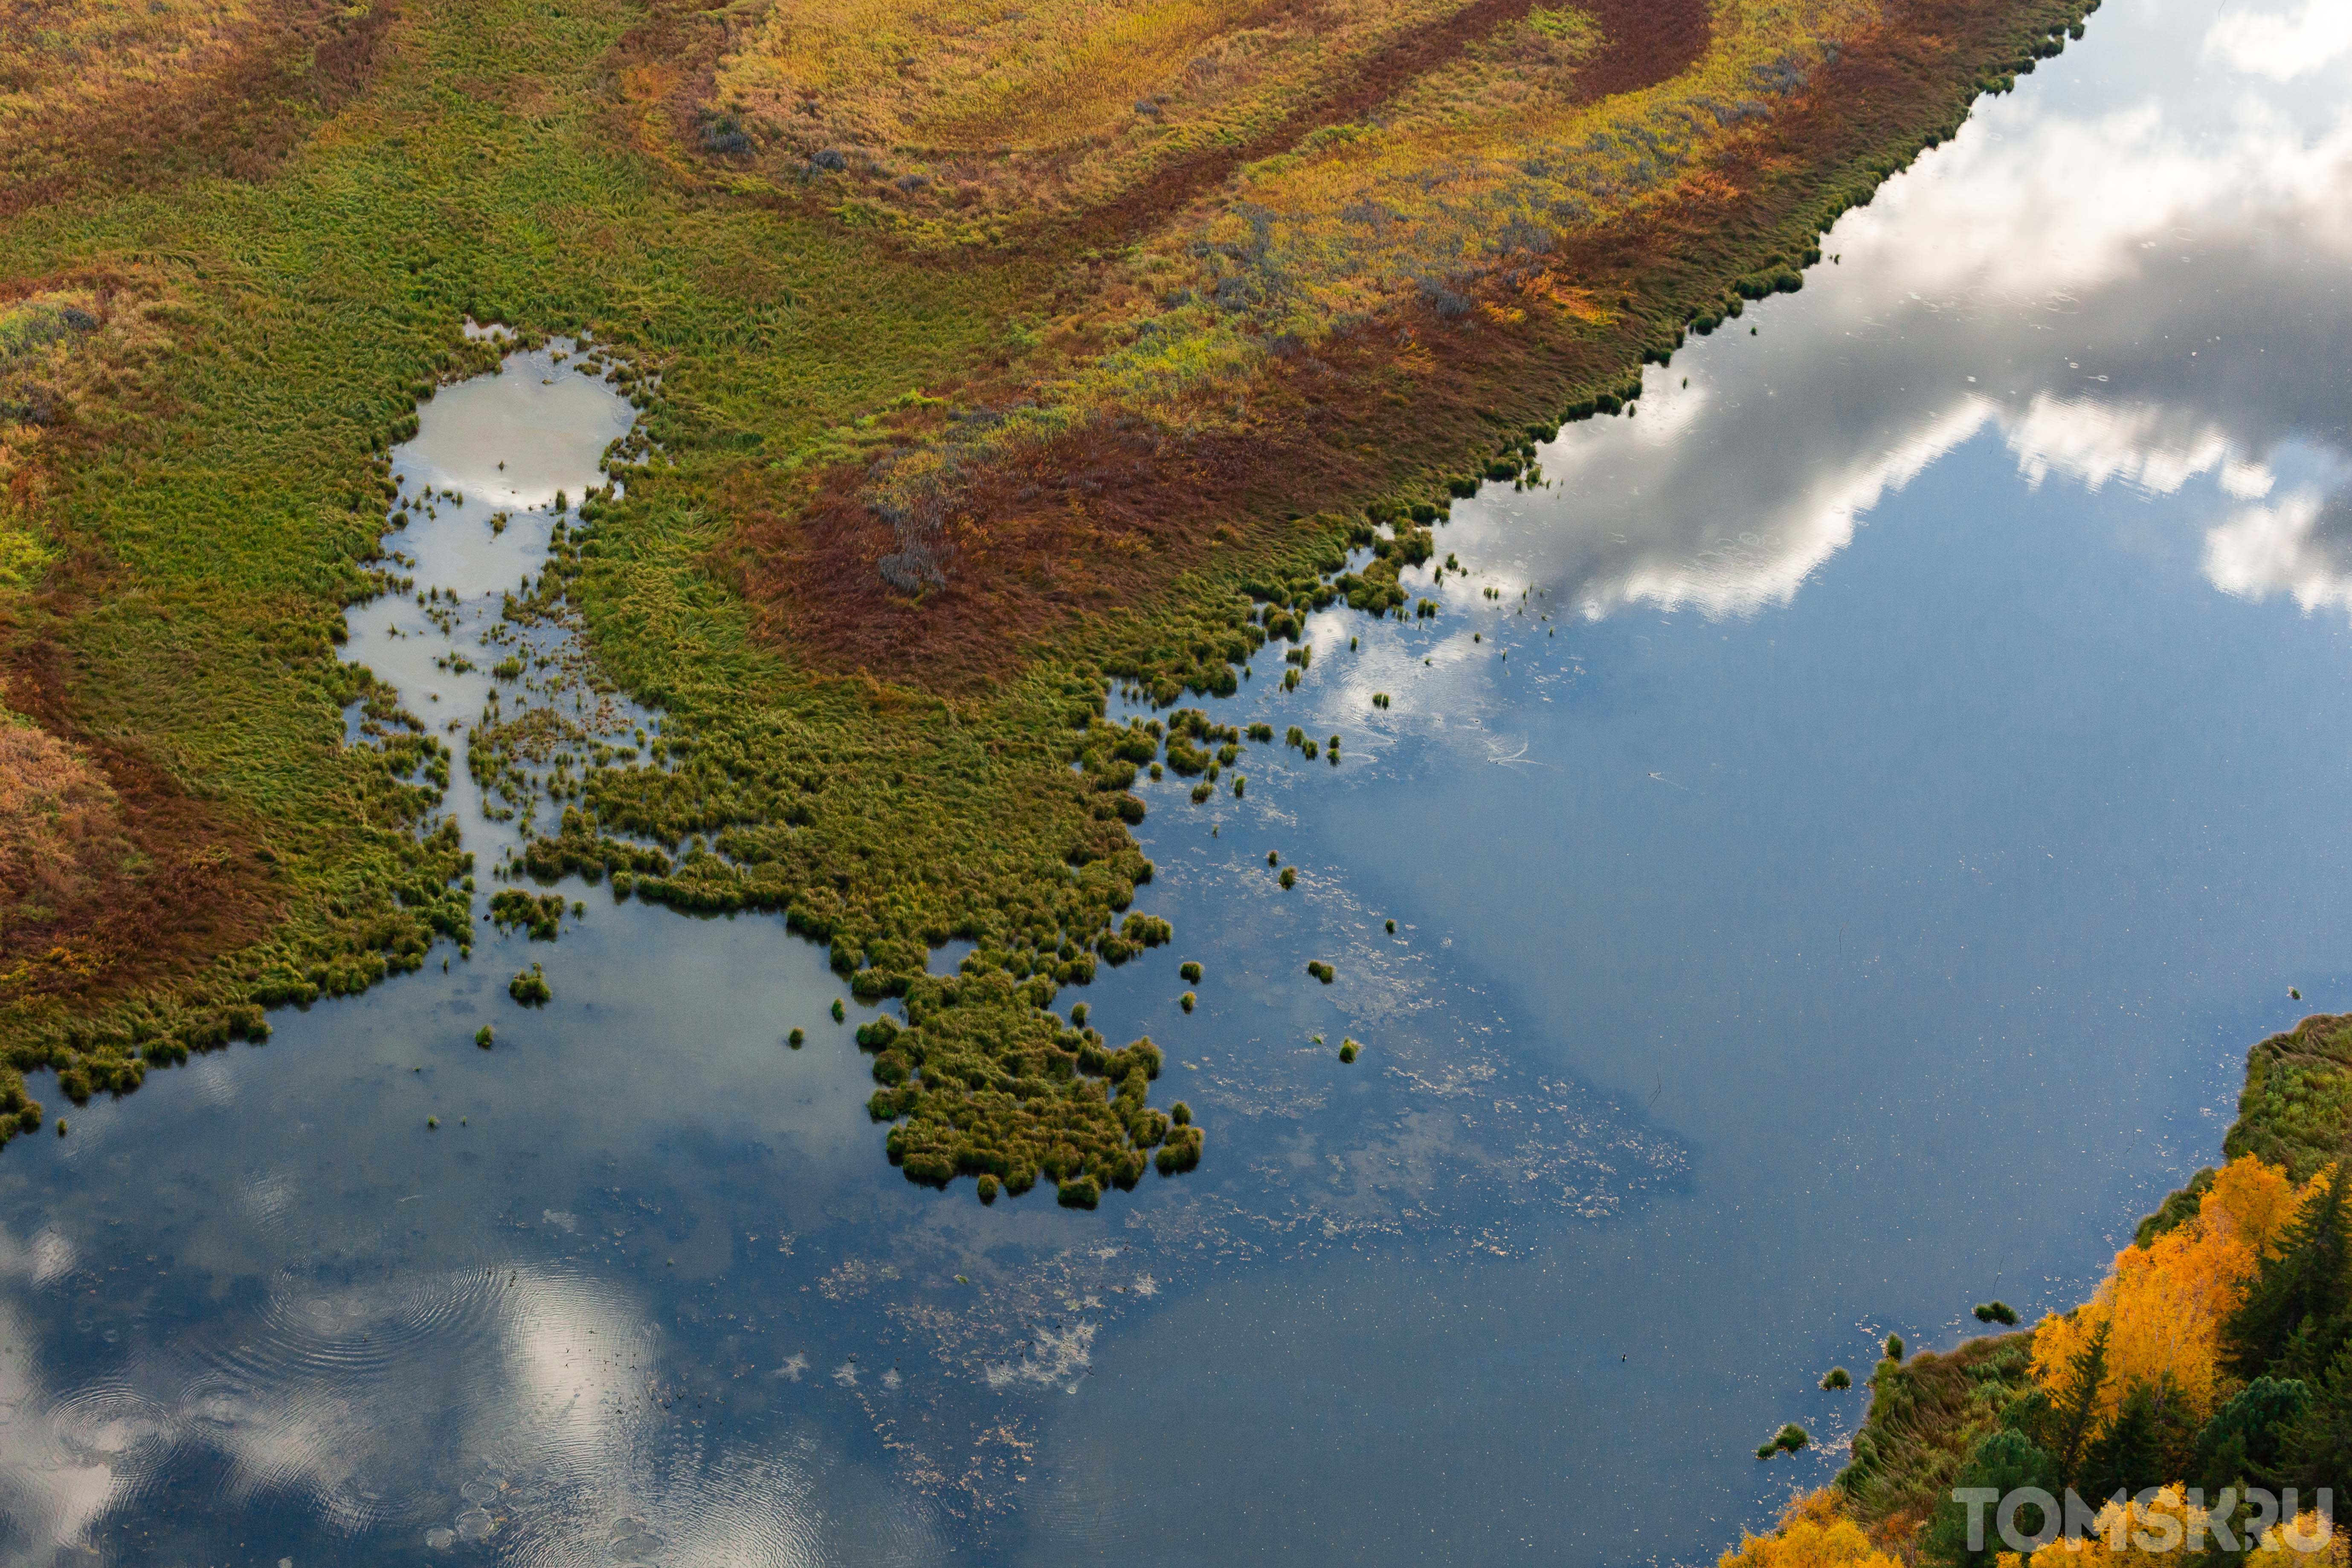 Самое большое болото новосибирской области. Васюганские болота Томская область. Томск Васюганское болото. Васюганские болота, Западная Сибирь. Васюганское болото заповедник.